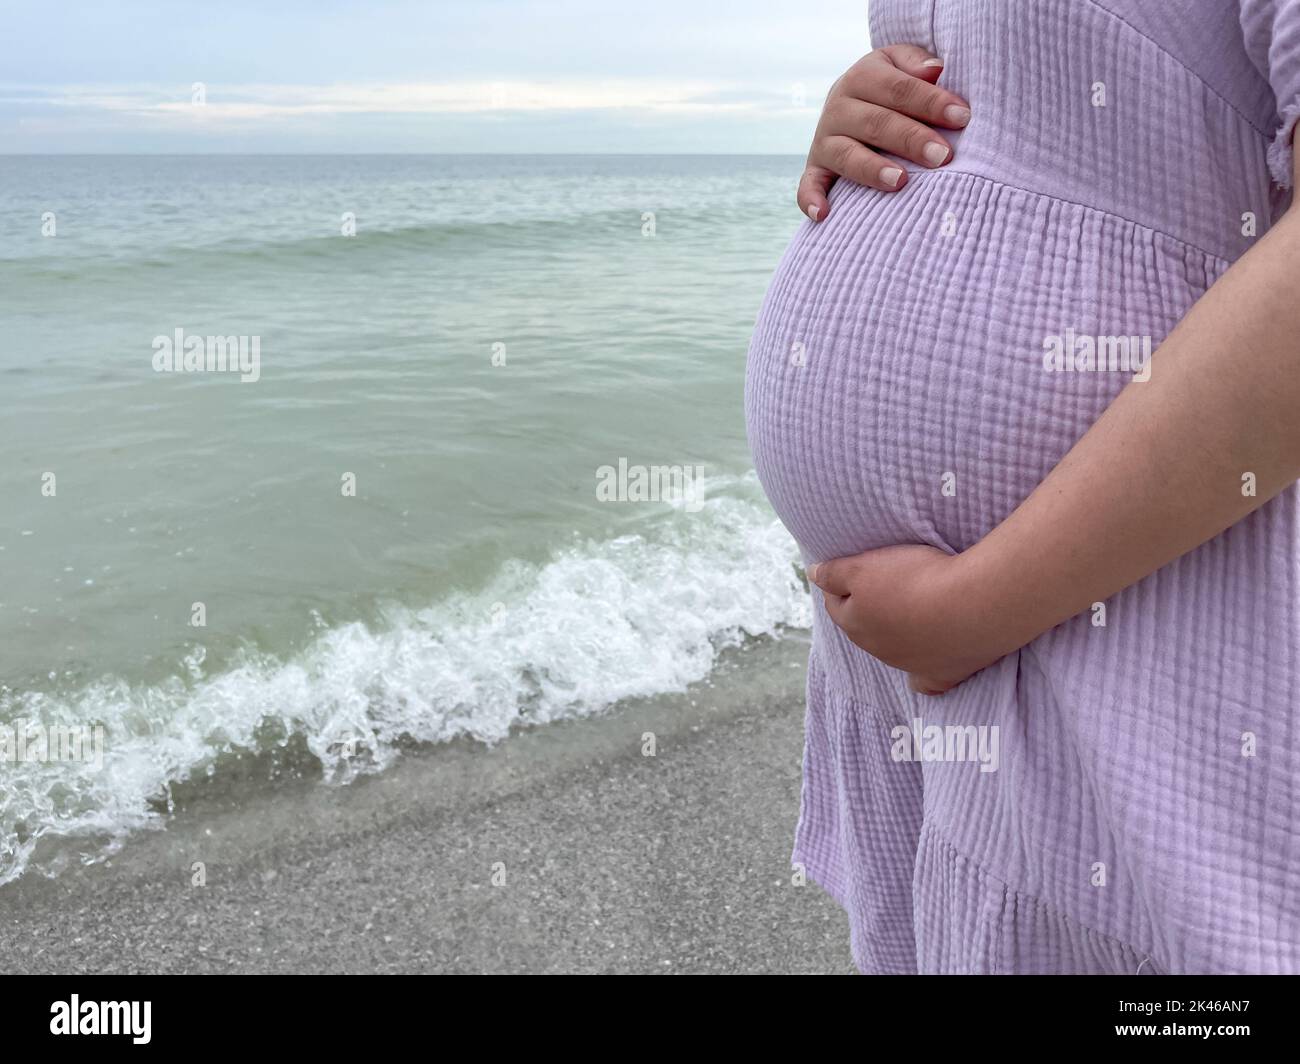 Aufnahme einer Schwangeren, die mit der Hand am Bauch am Strand steht - Schwangerschaft, Erwartung, Mutterschaft Konzept Stockfoto